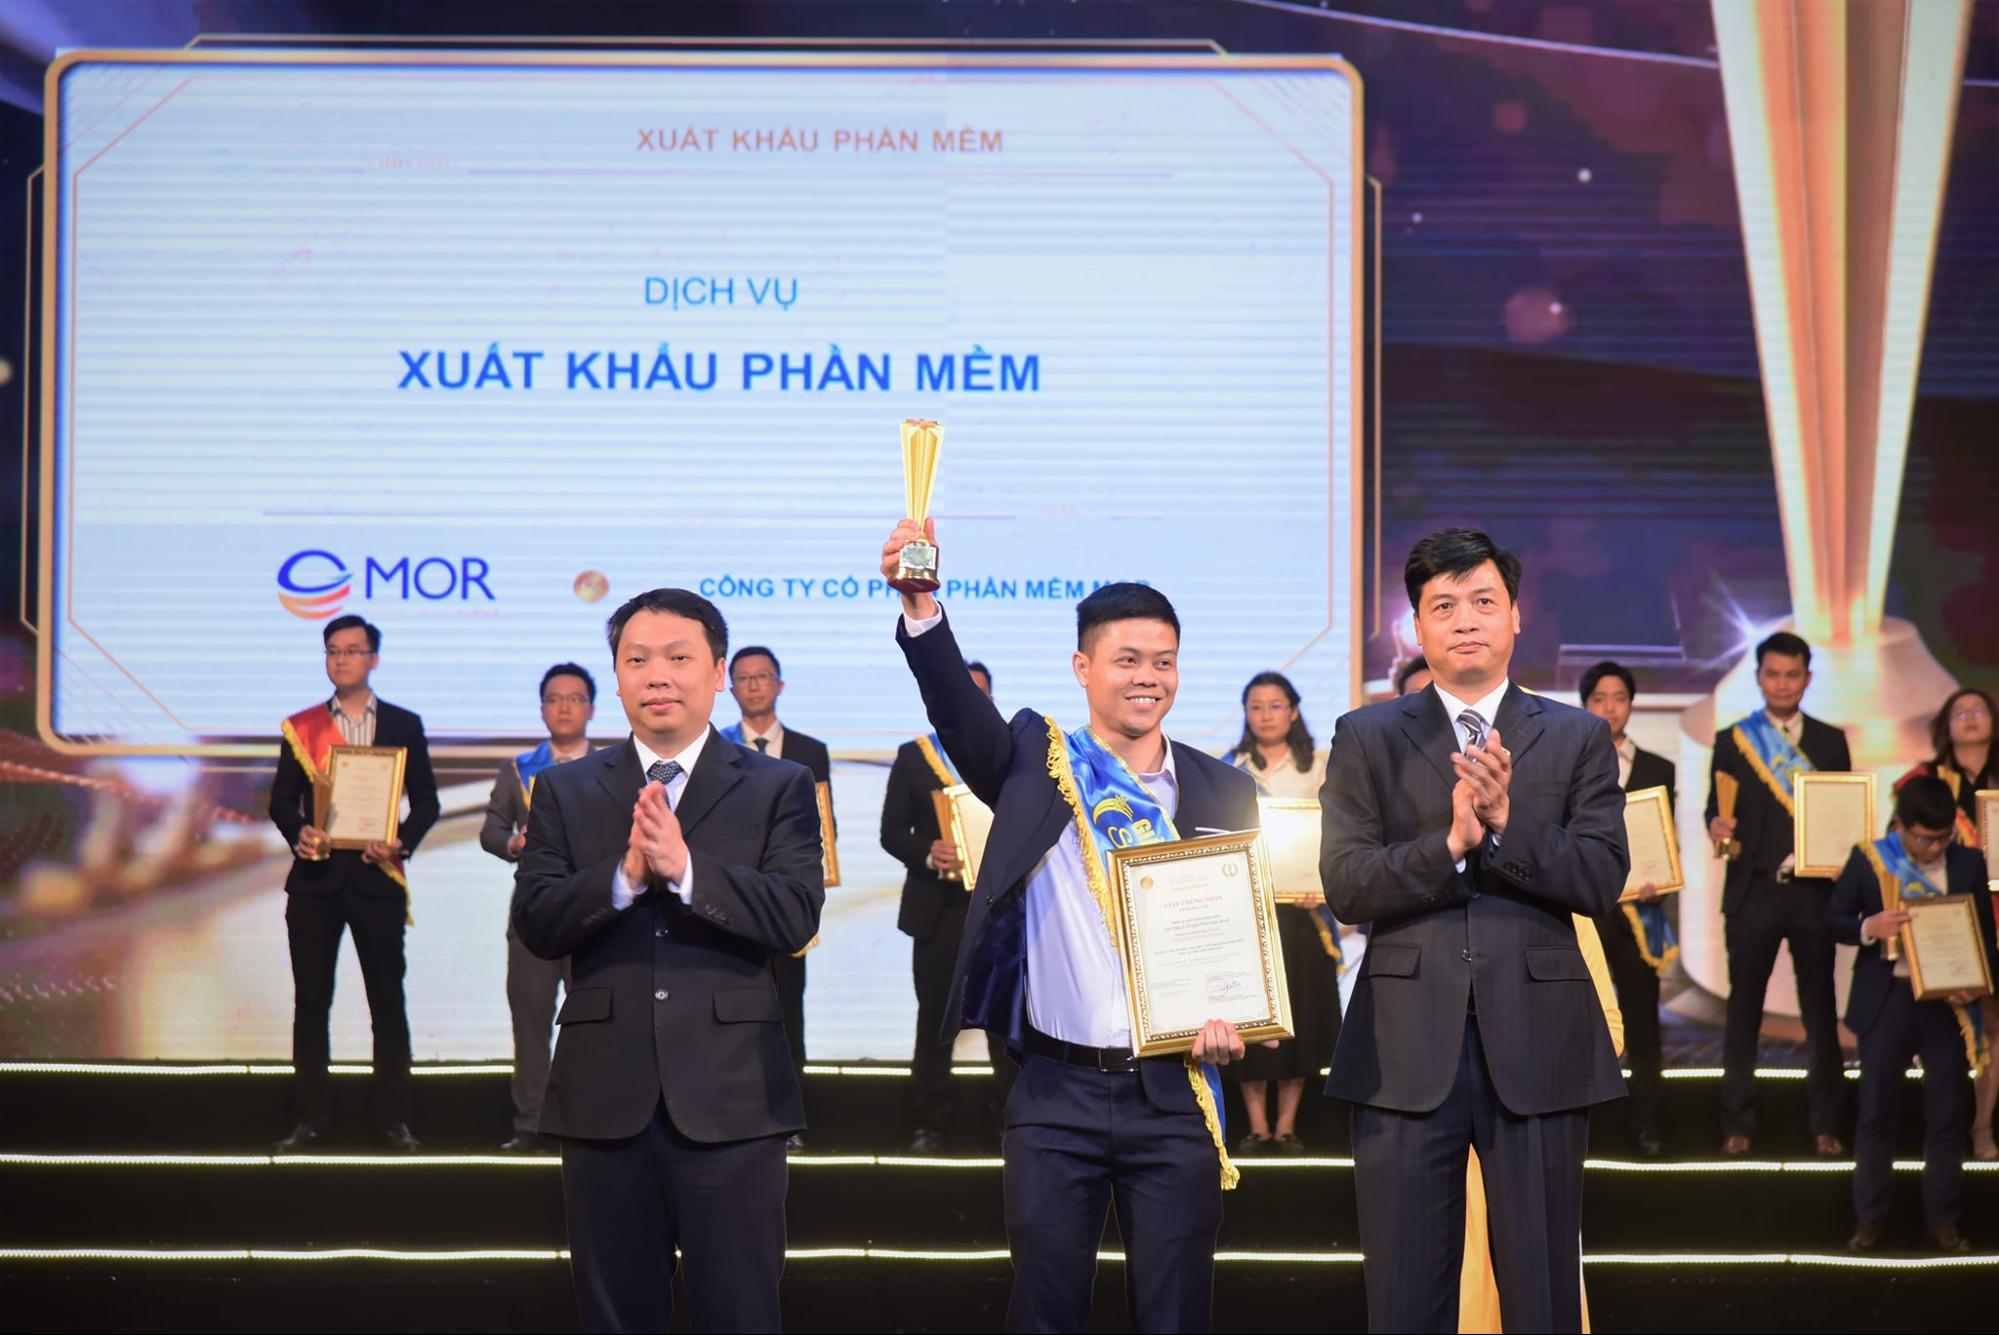 Đại diện của MOR Software: Anh Phạm Hữu Cảnh - Giám đốc Giải pháp lên sân khấu nhận giải